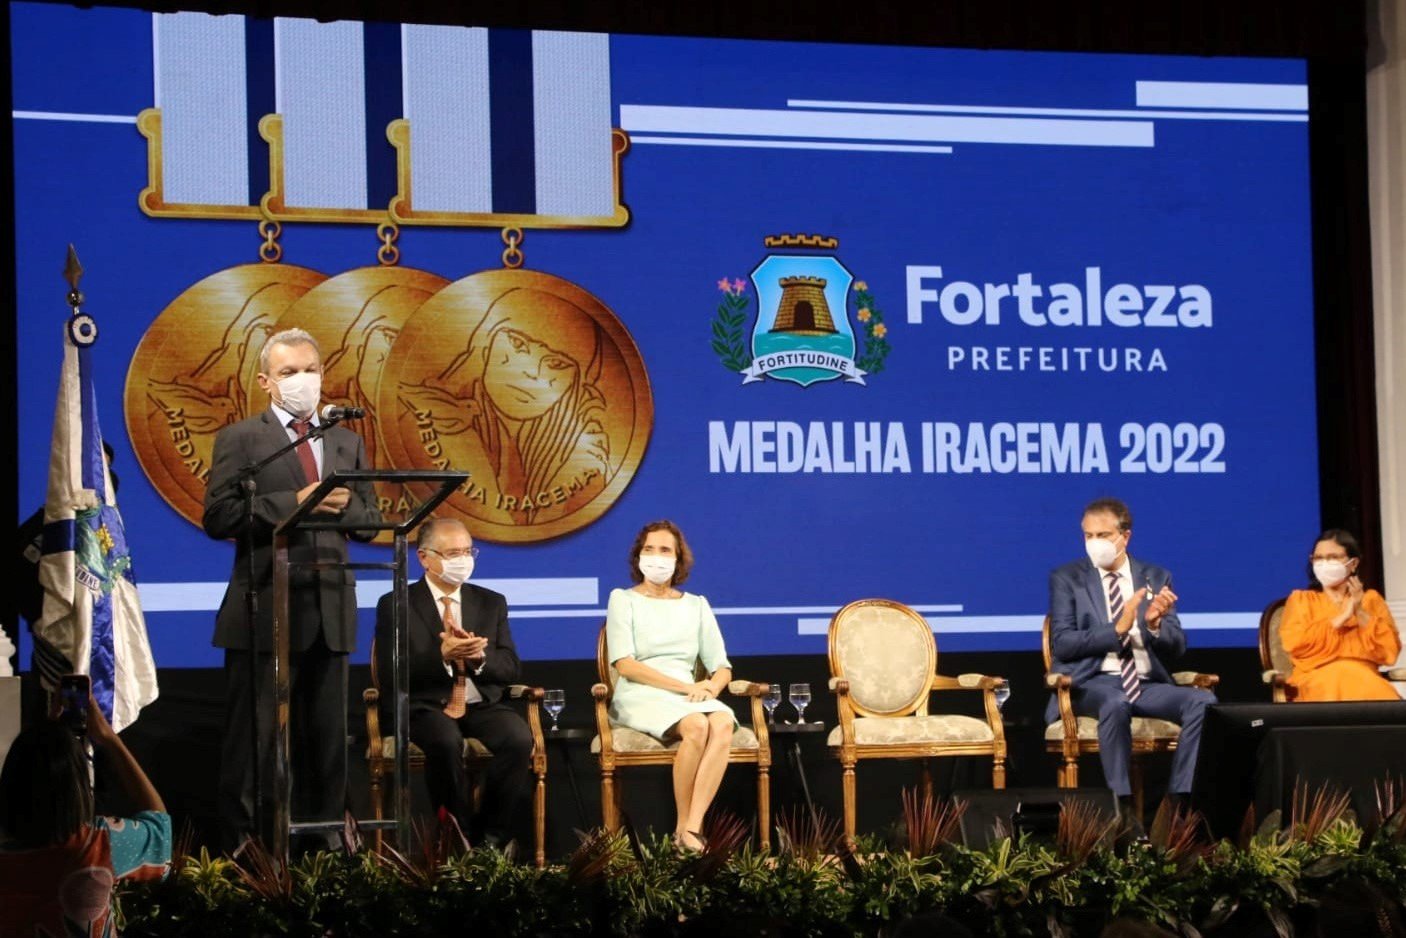 Homenagem: Prefeito Sarto entrega 5ª Medalha Iracema no aniversário de 296 anos de Fortaleza